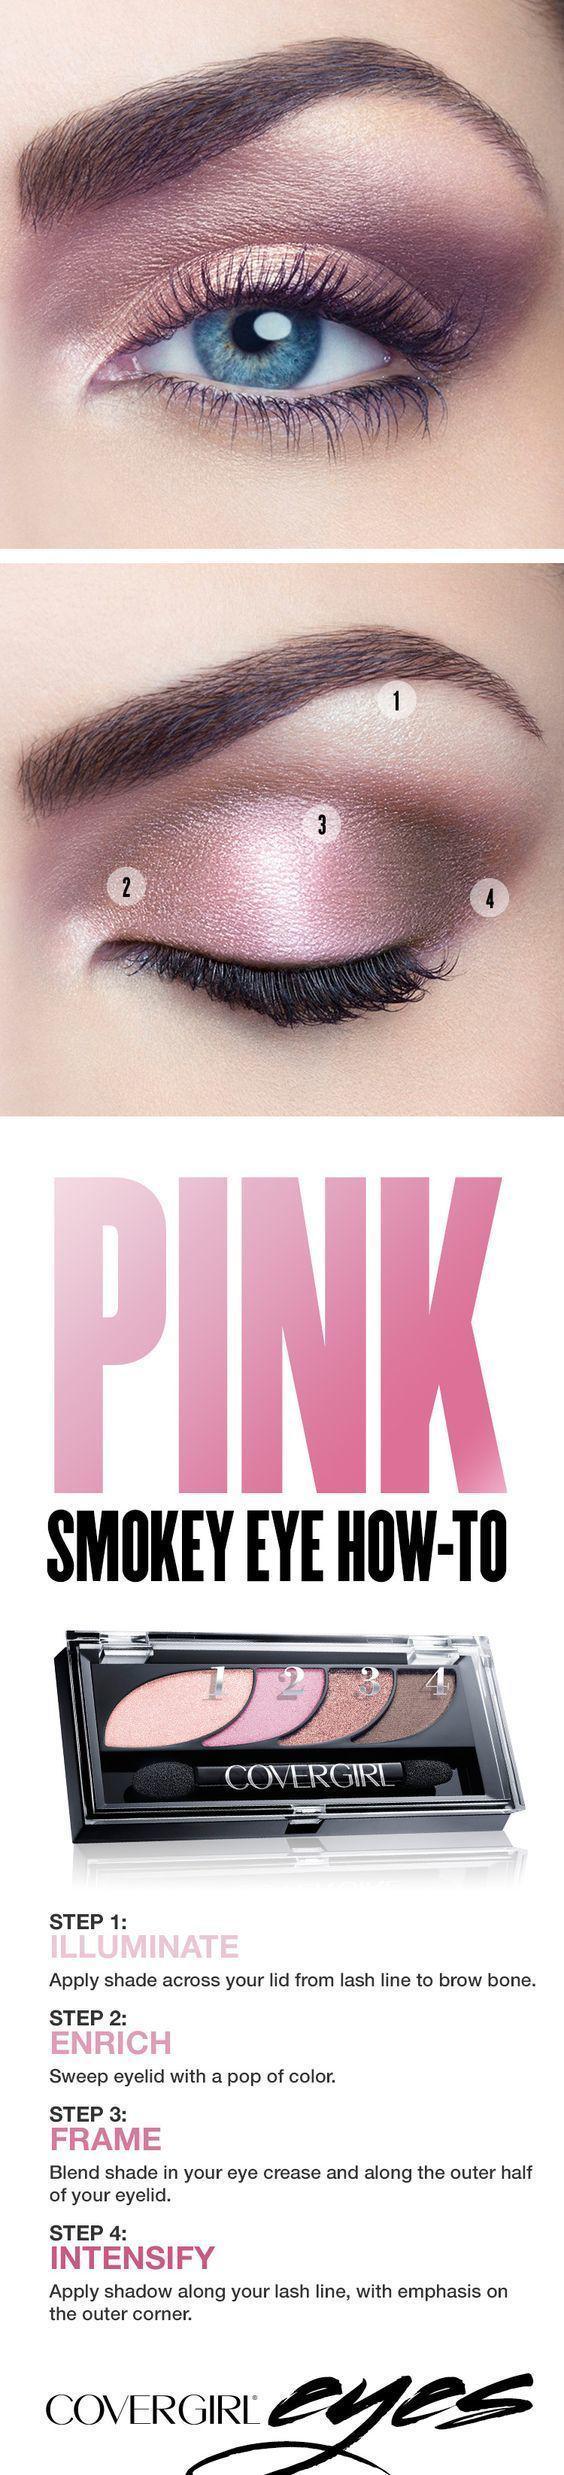 รูปภาพ:http://www.prettydesigns.com/wp-content/uploads/2017/01/Pink-Smokey-Eyes.jpg